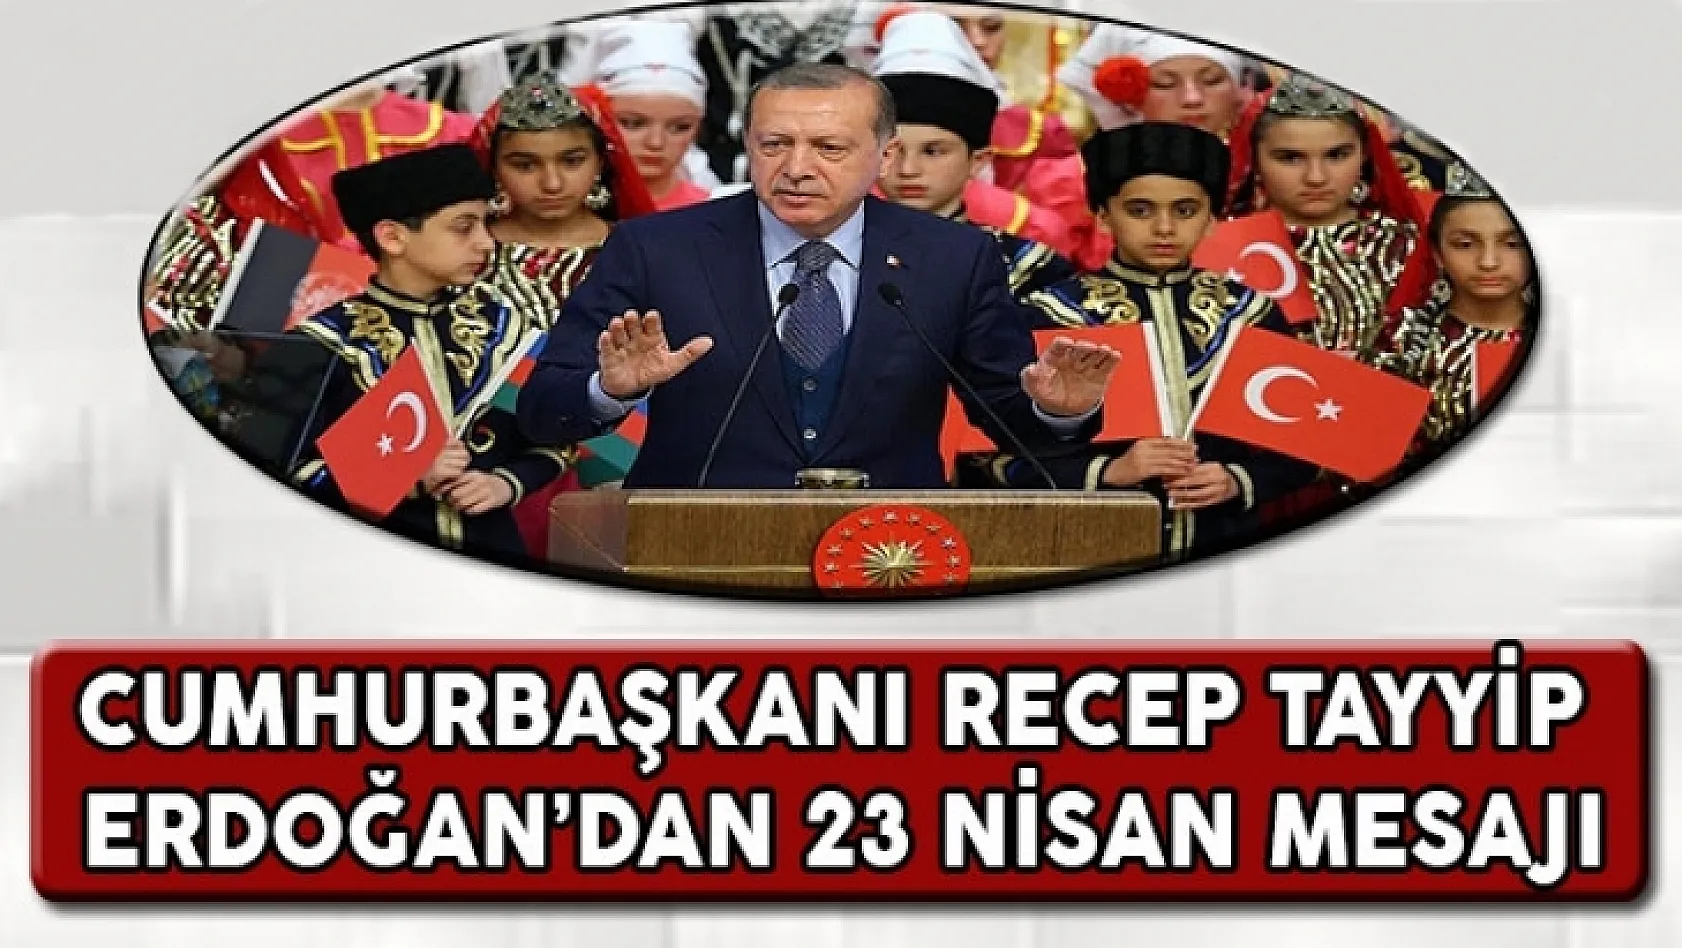 Cumhurbaşkanı Erdoğan'dan 23 Nisan Mesajı